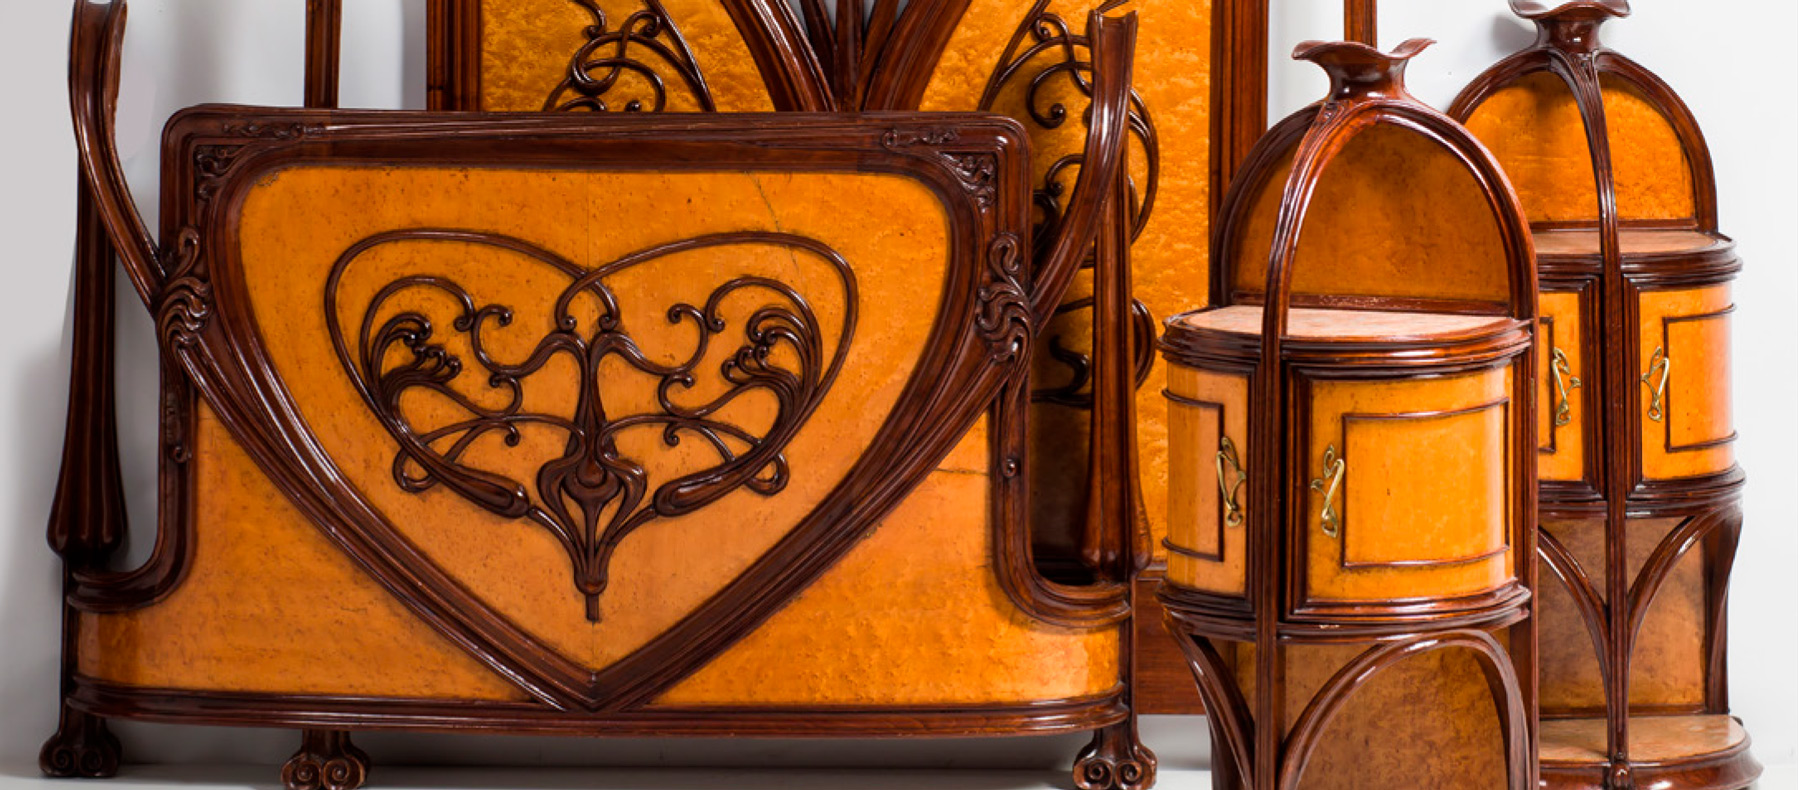 6.000 euros por un dormitorio Art Nouveau en Ansorena